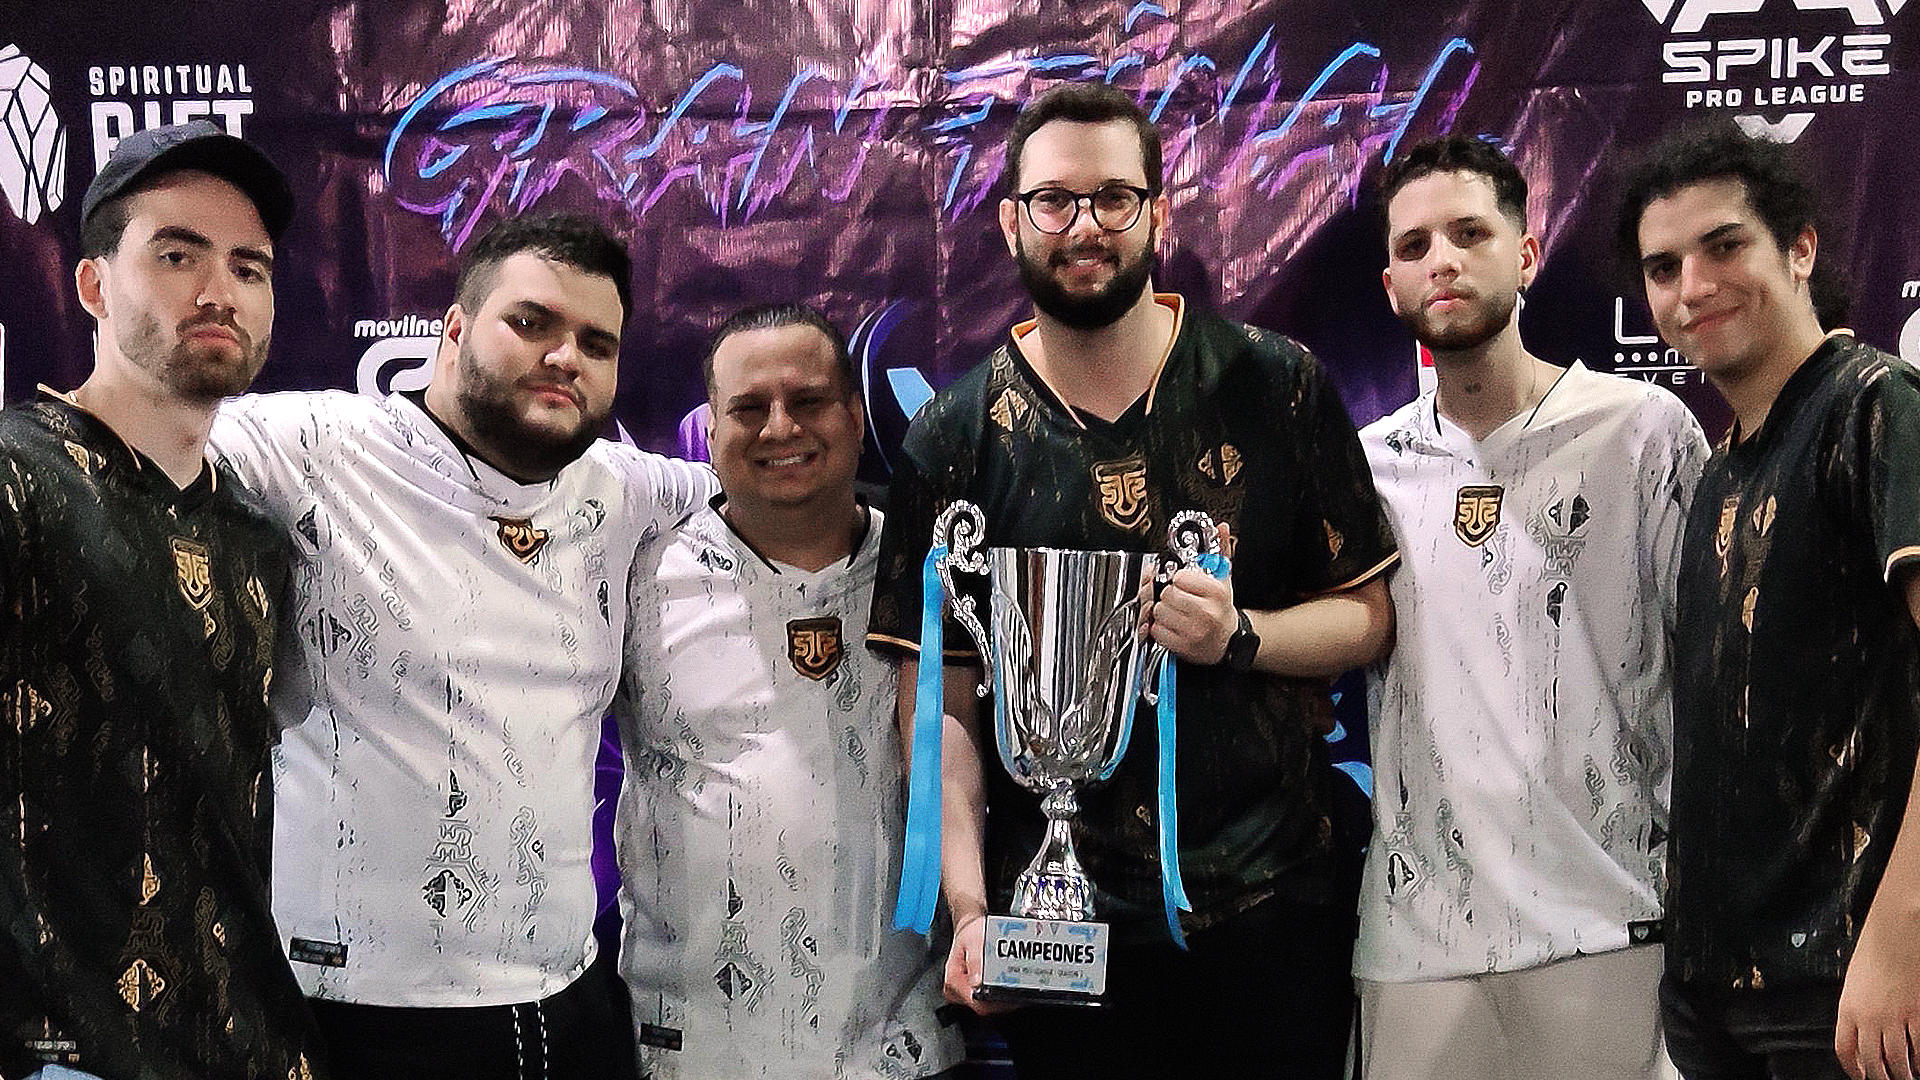 Fusion Venezuela ganó su segundo campeonato consecutivo en la Spike Pro League